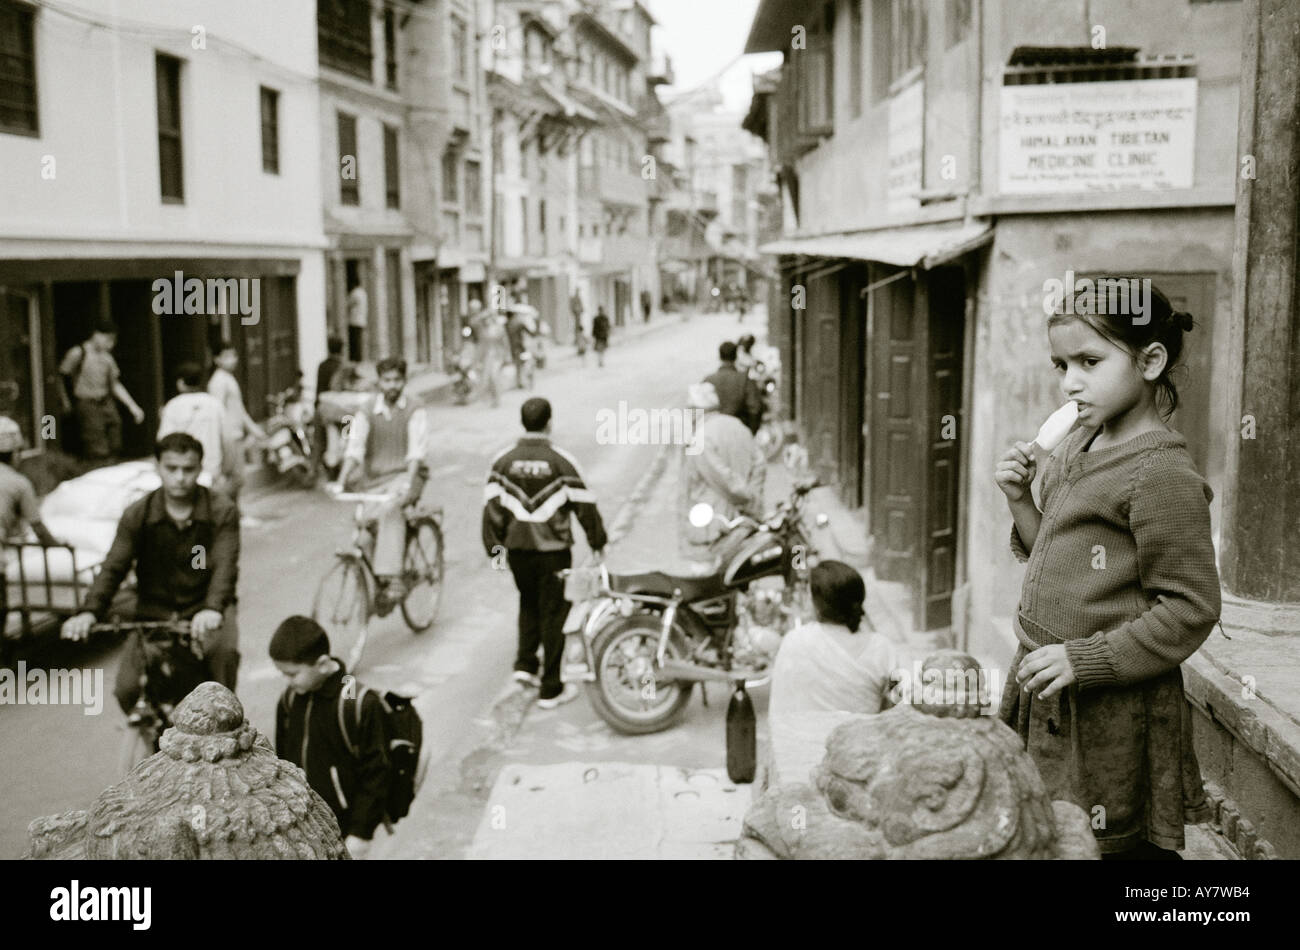 Welt zu reisen. Straßenbild und Leben in Patan in Kathmandu in Nepal in Asien. Reportage-Wanderlust-Eskapismus-Kultur-Geschichte Stockfoto